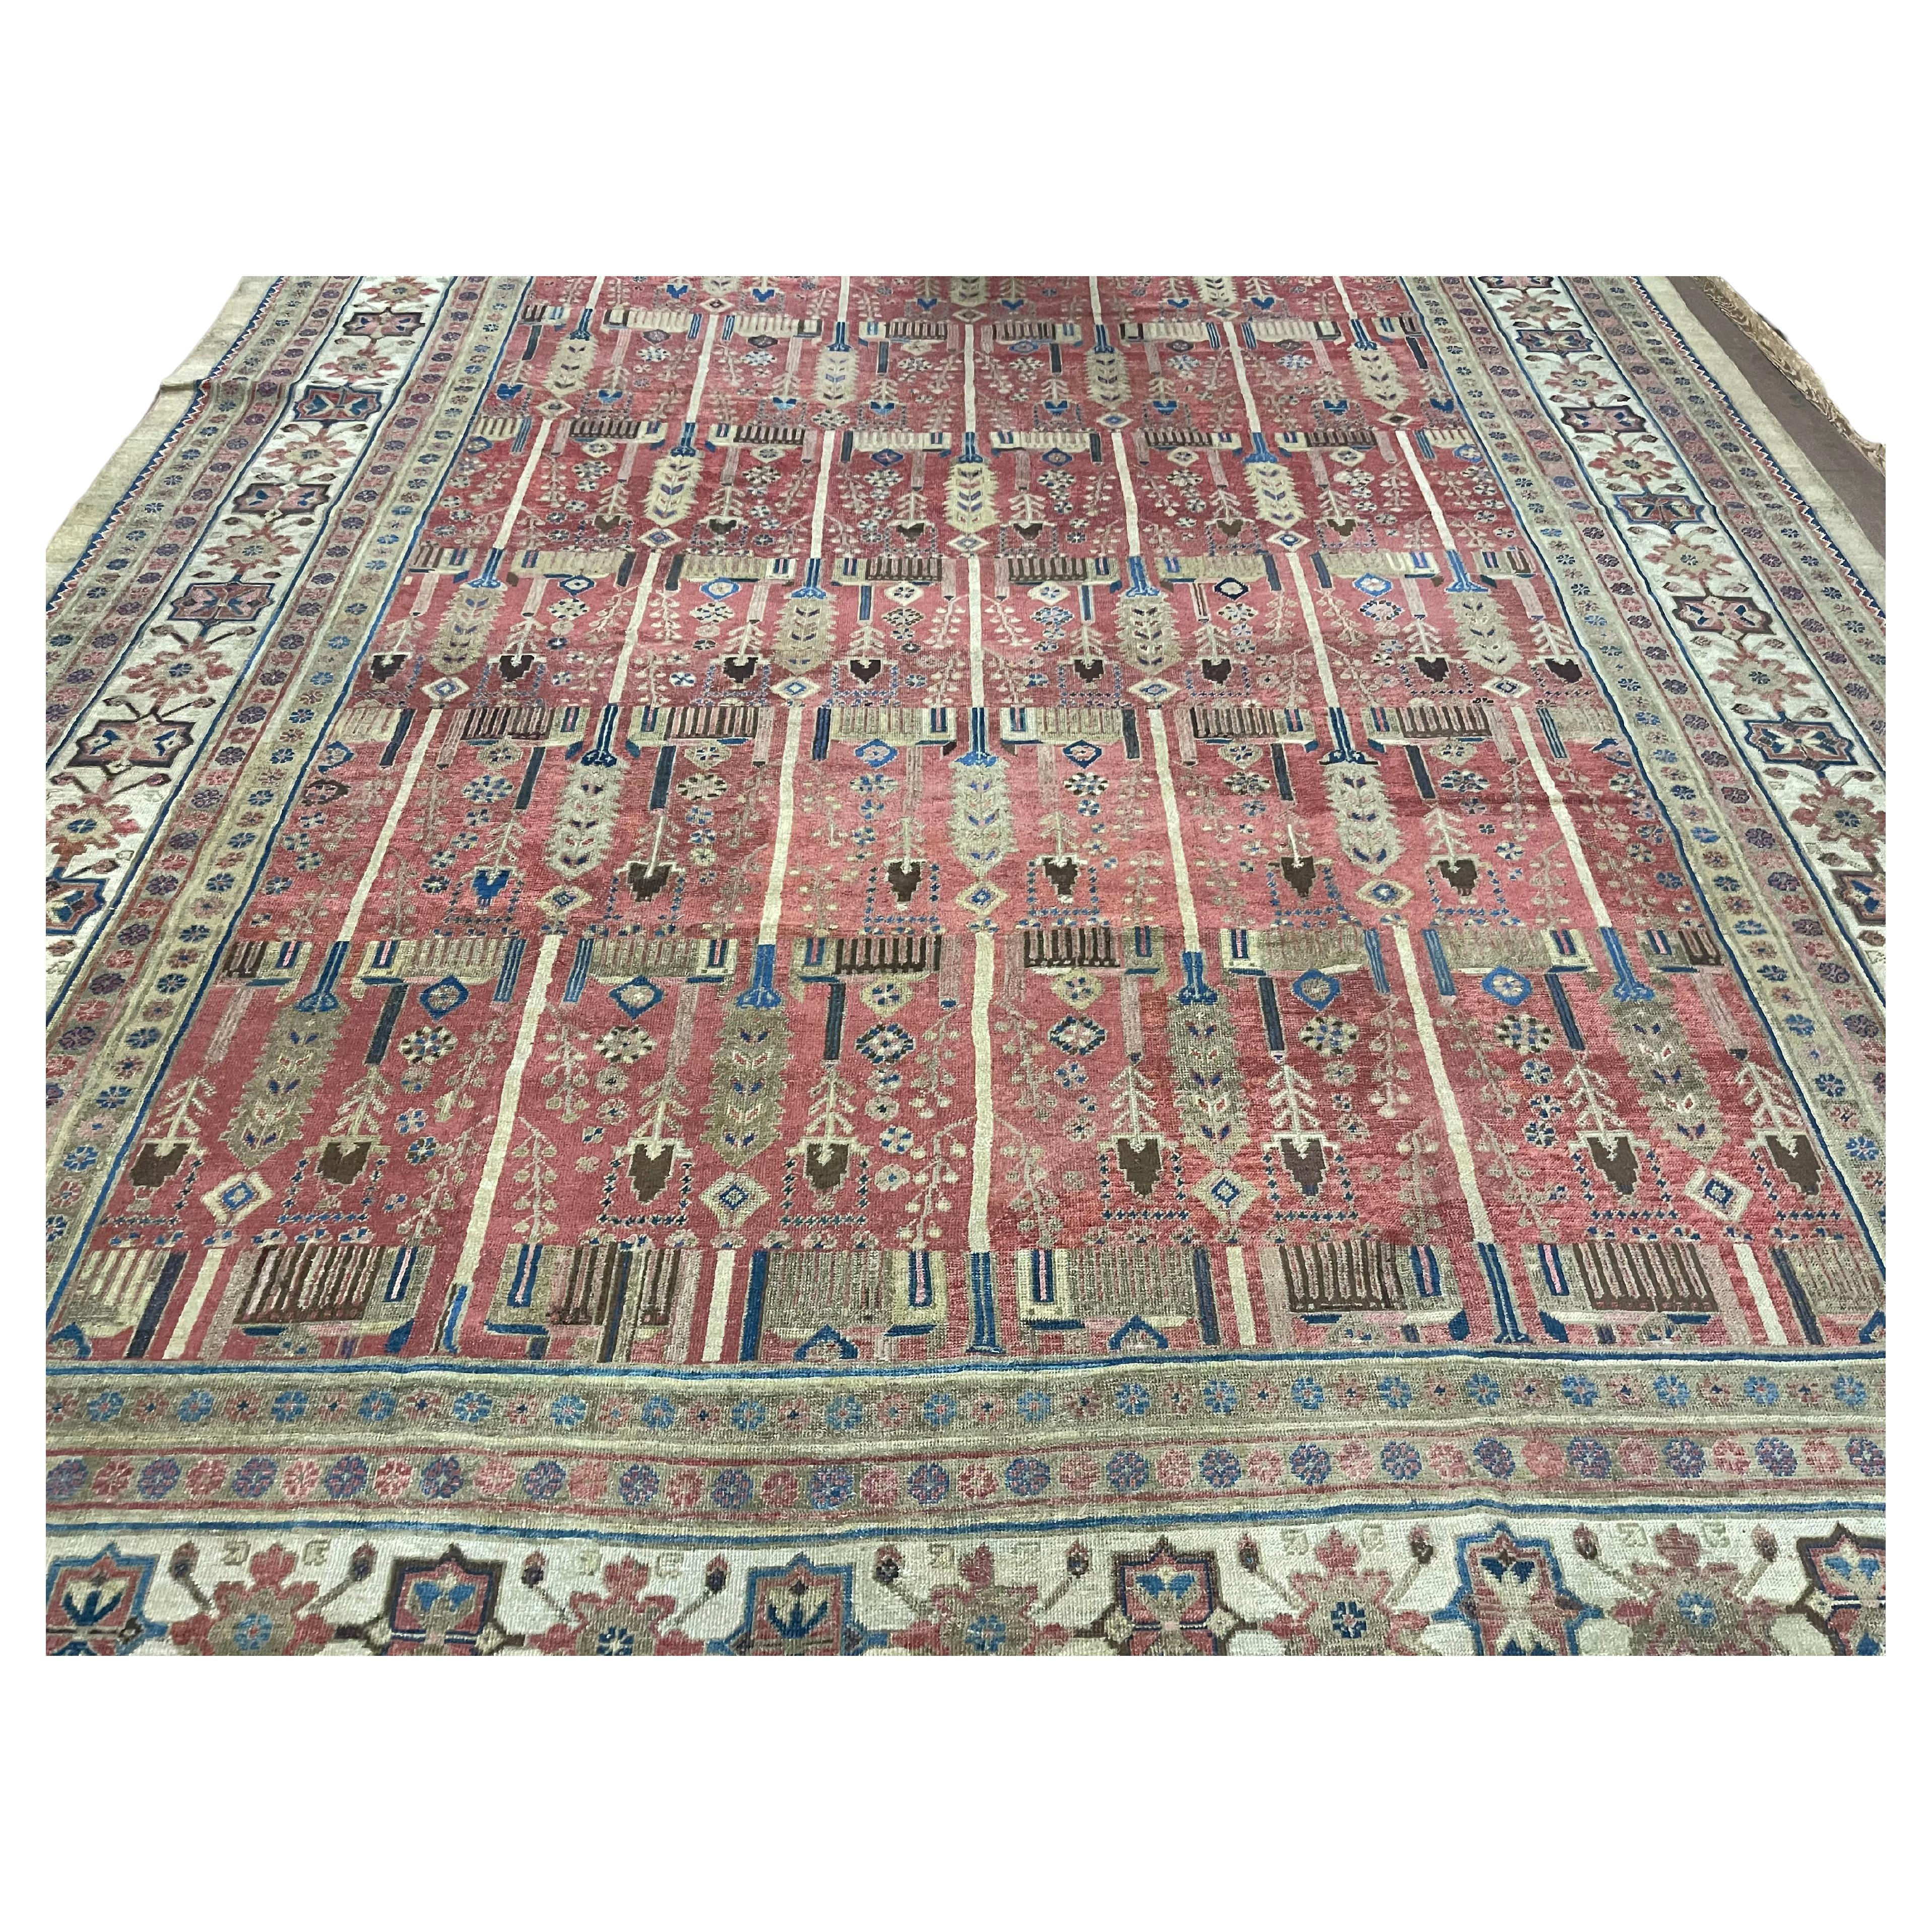 Handmade Antique Persian Bakhshaish Rug 12.2' x 15.8', 1880s - 1B21